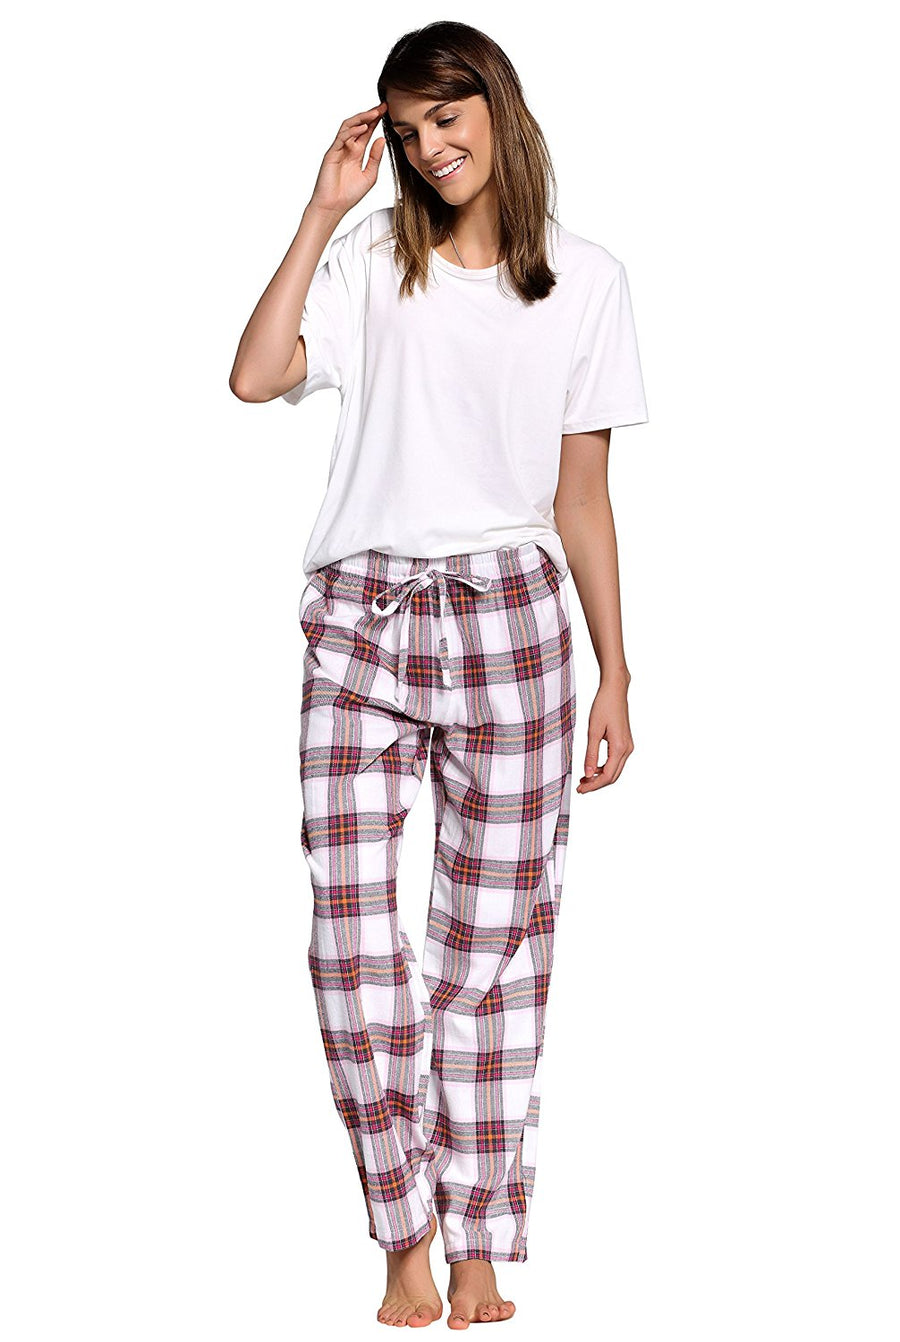 CYZ Men's 100% Cotton Super Soft Flannel Plaid Pajama Pants – CYZ